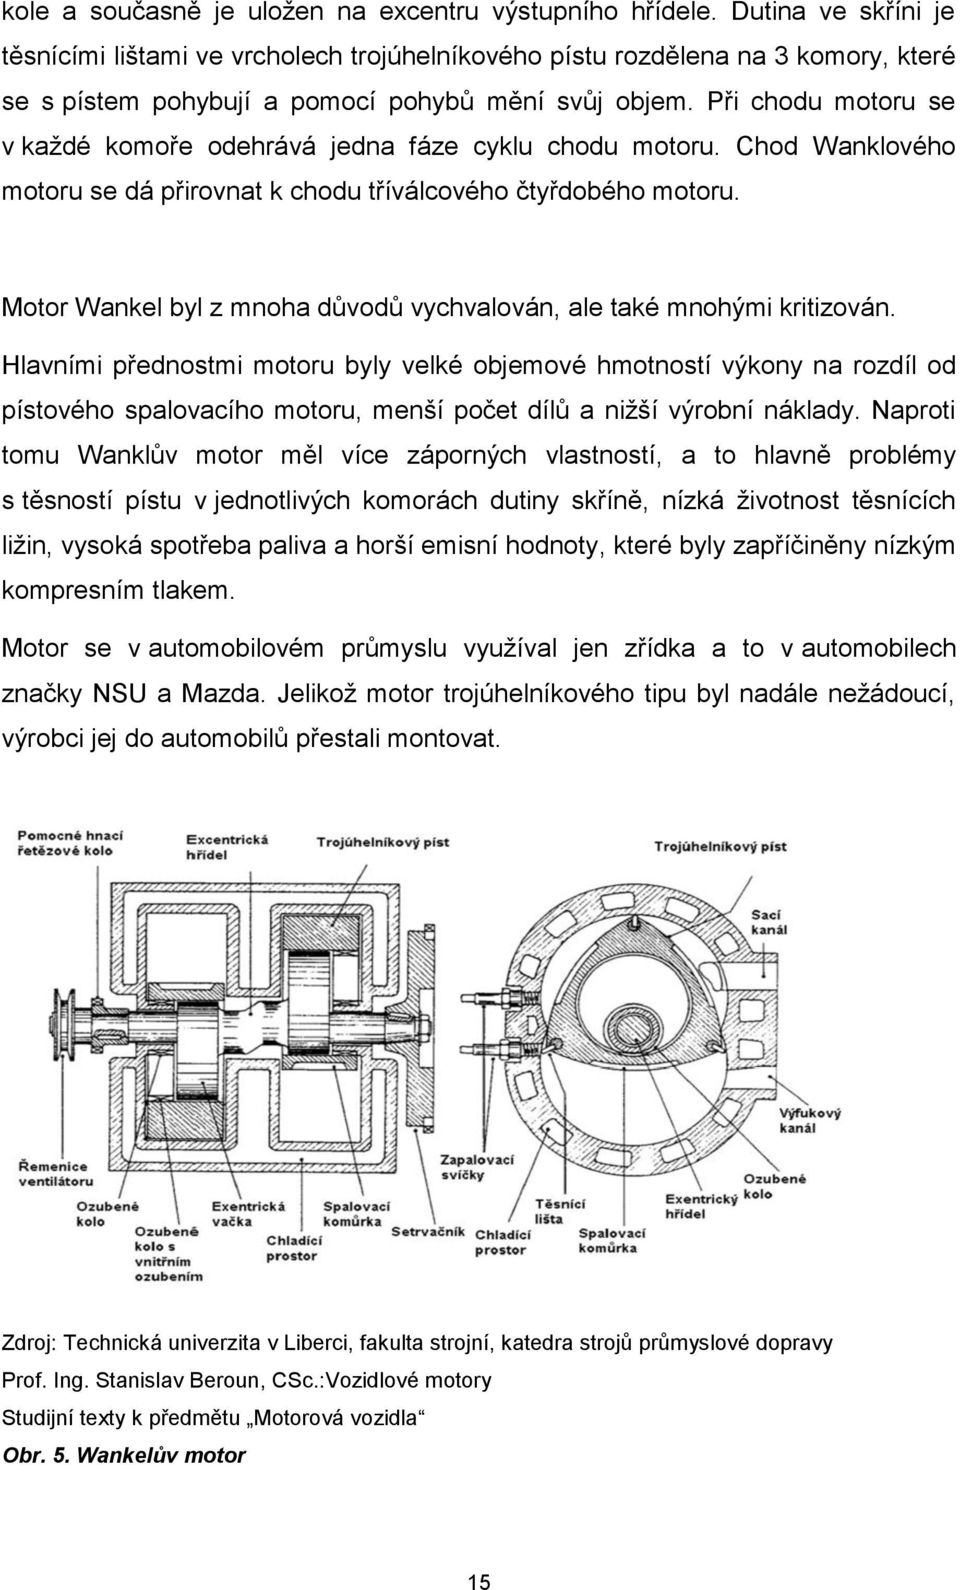 Při chodu motoru se v každé komoře odehrává jedna fáze cyklu chodu motoru. Chod Wanklového motoru se dá přirovnat k chodu tříválcového čtyřdobého motoru.